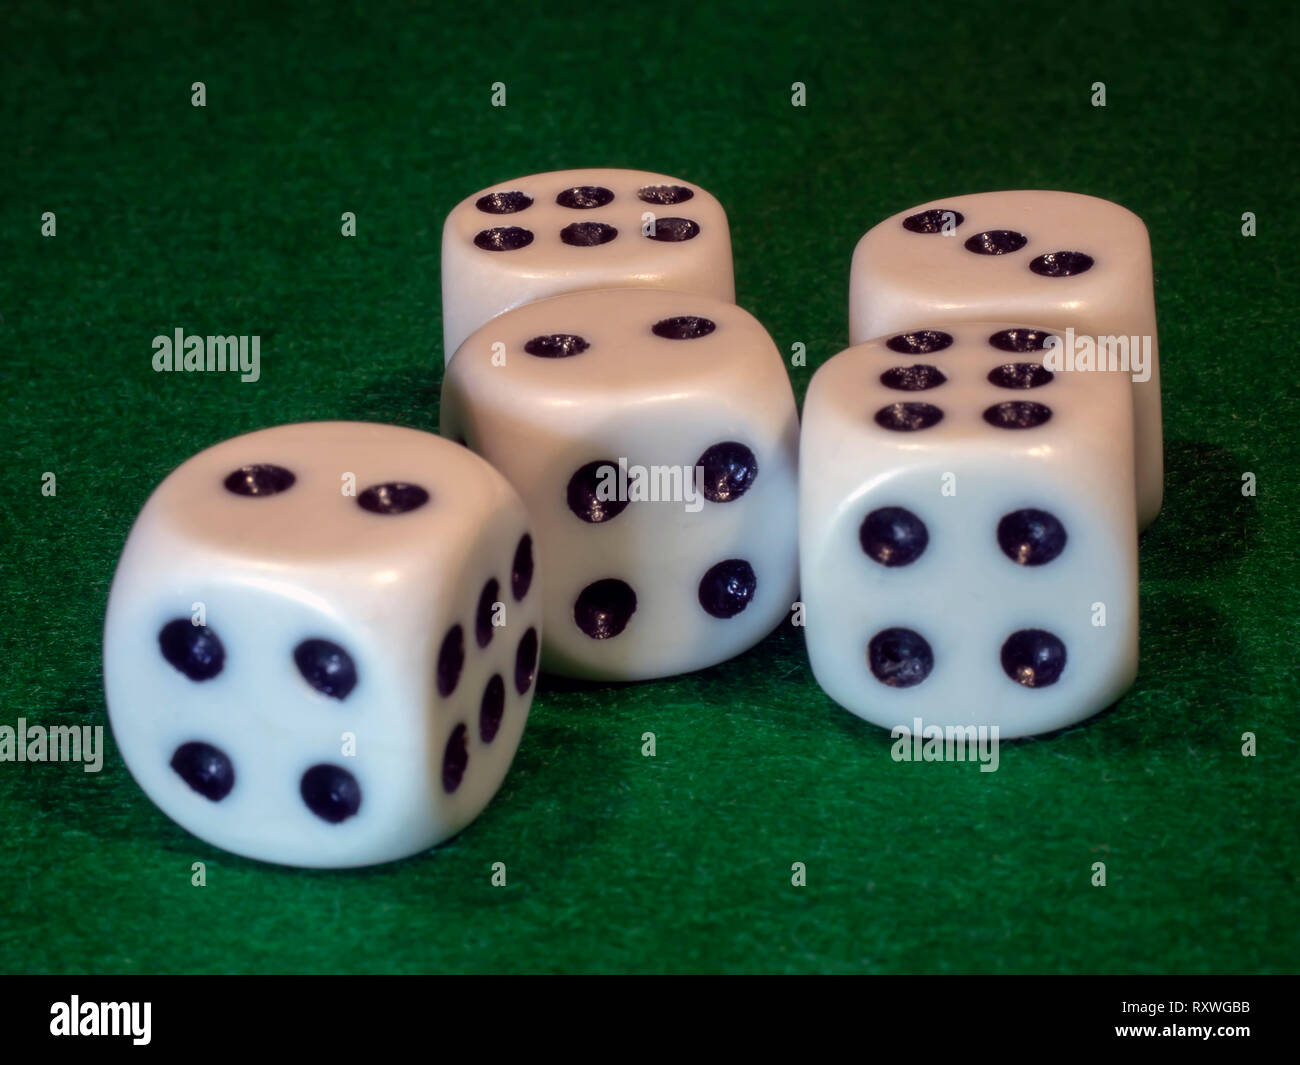 L'os cube de couleur blanche avec des points noirs pour gamblings se trouve sur toile verte. Banque D'Images